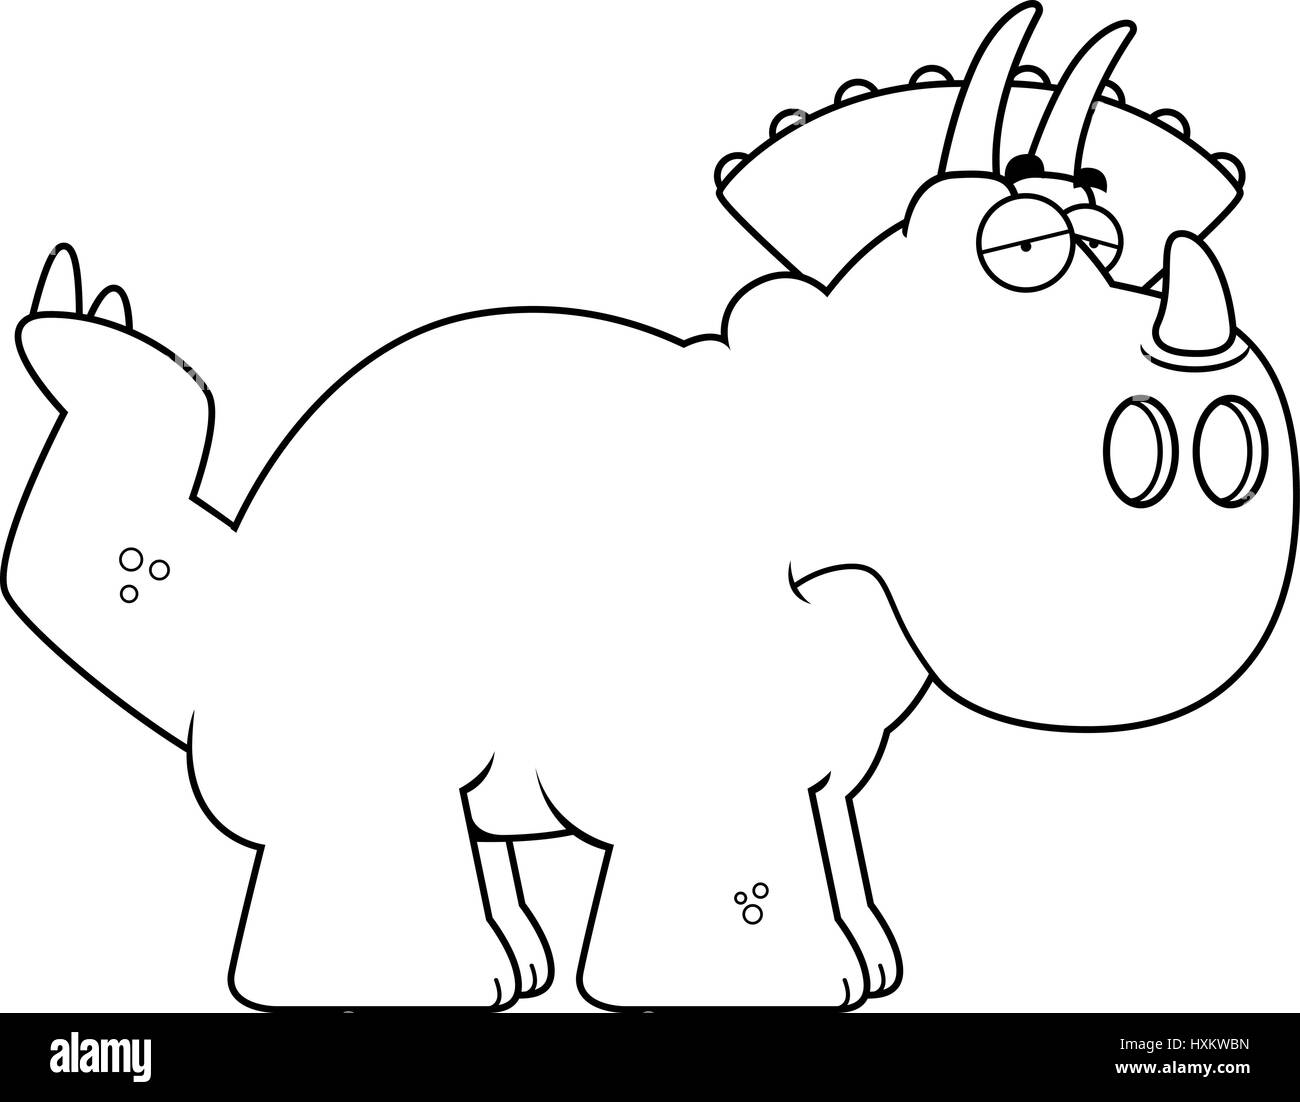 A cartoon illustration of a Triceratops dinosaur looking sad. Stock Vector